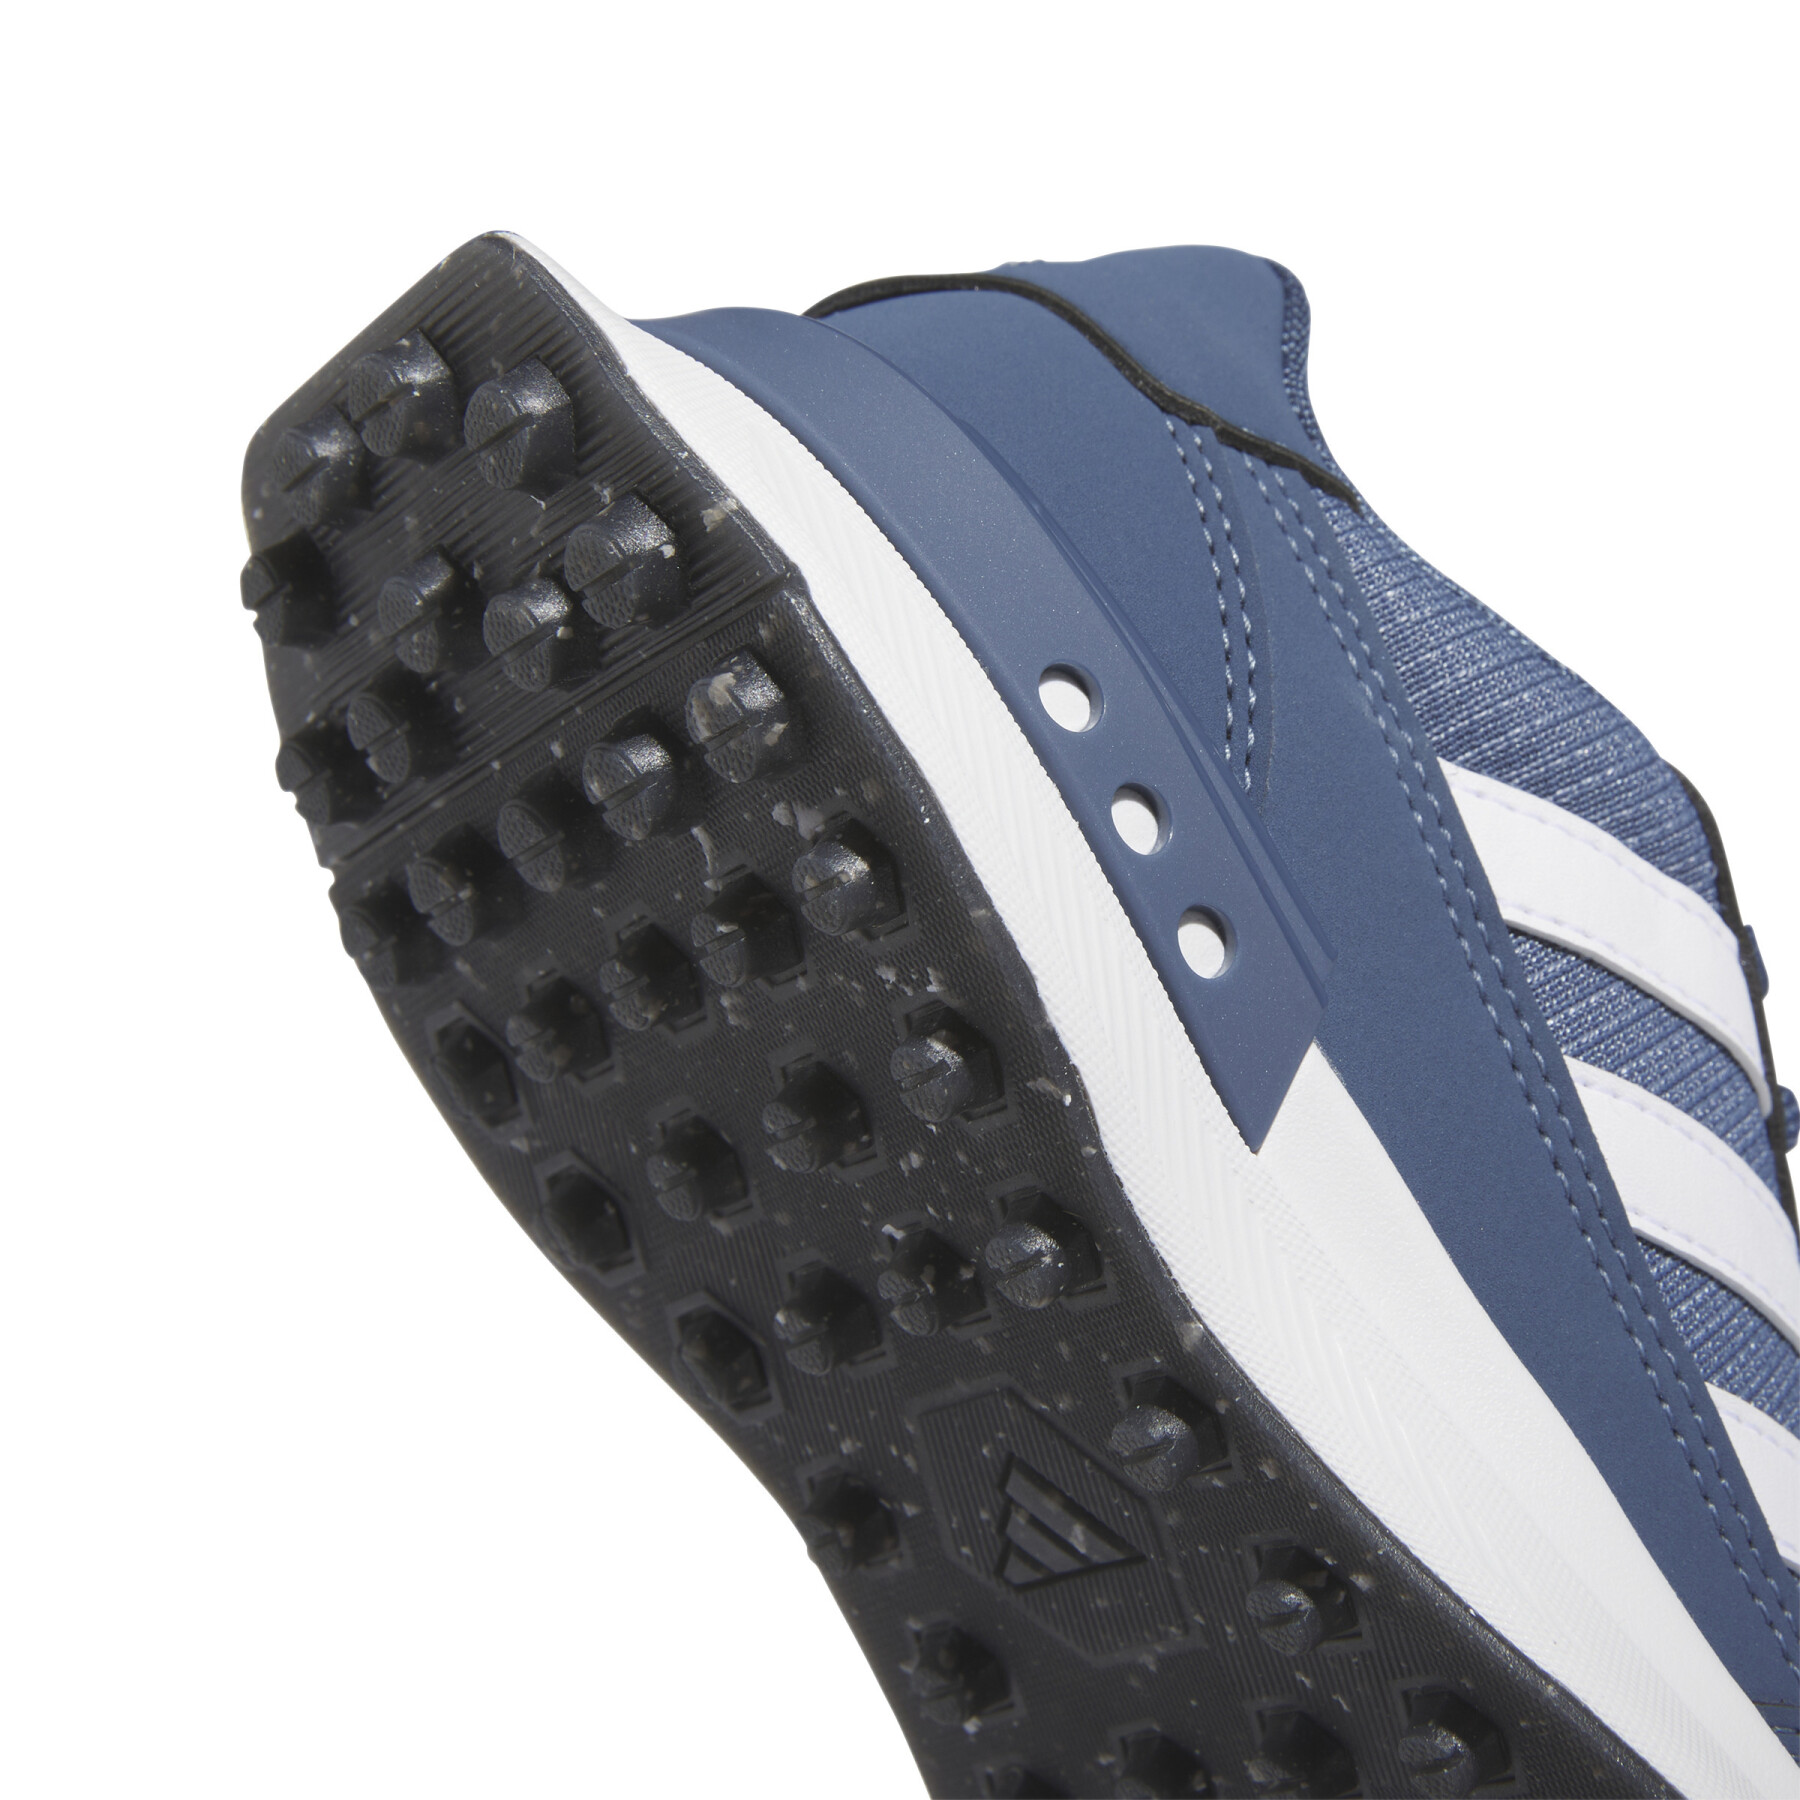 Children's spikeless golf shoes adidas S2G Spikeless 24